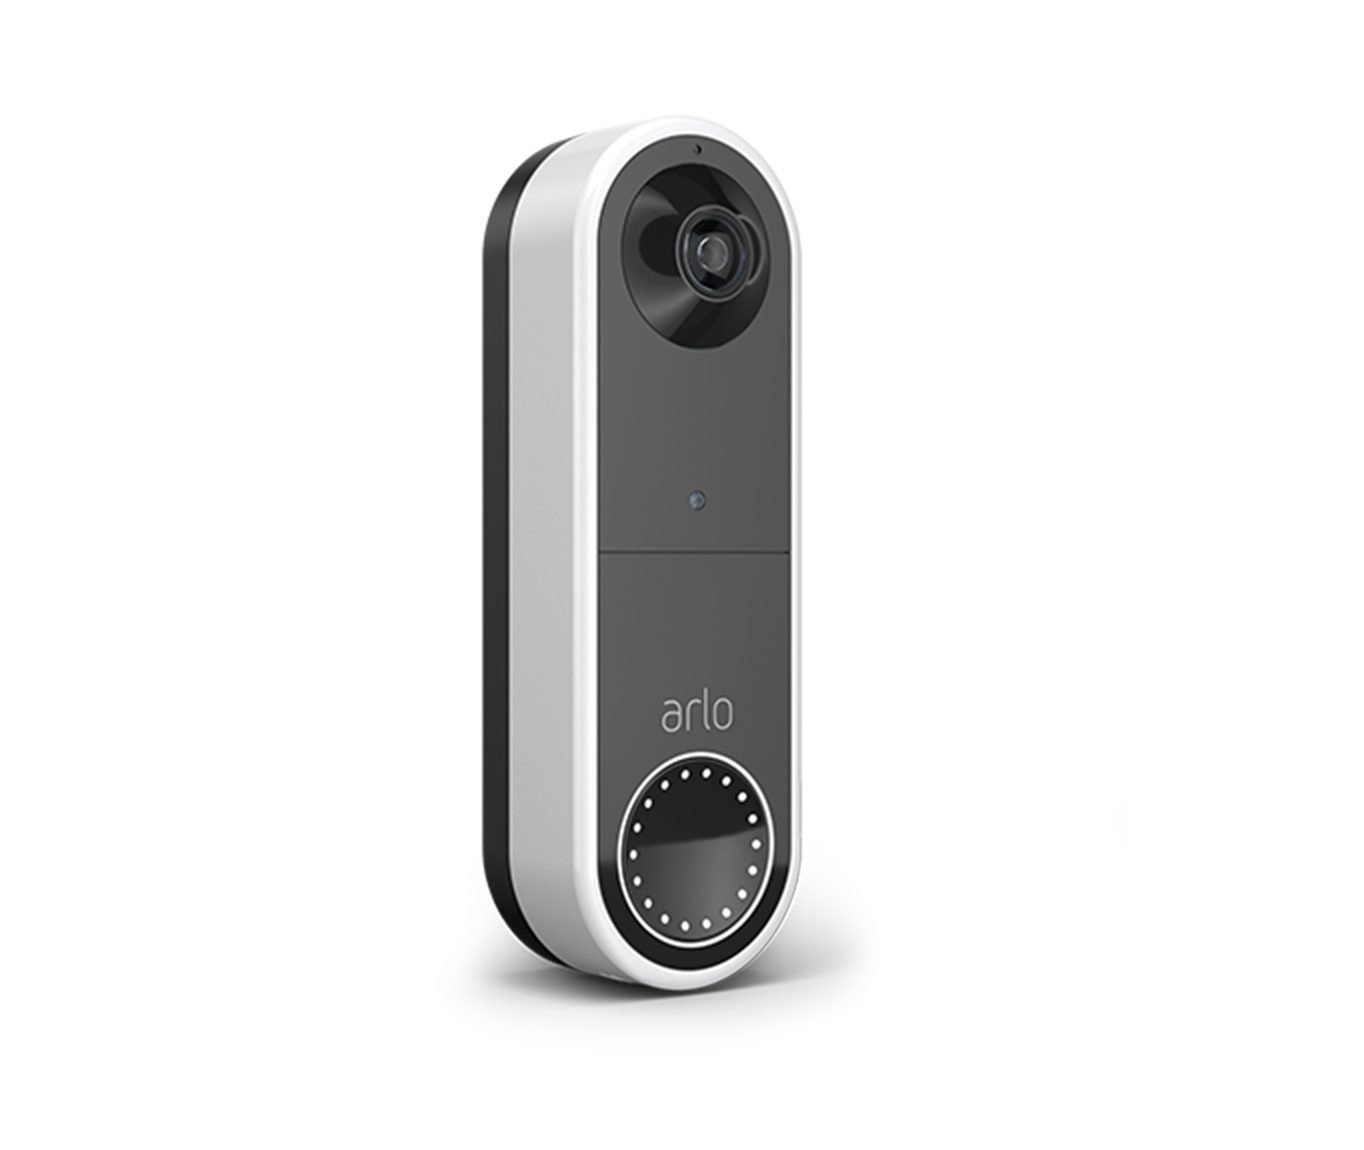 Foto : Review - Arlo Video Doorbell